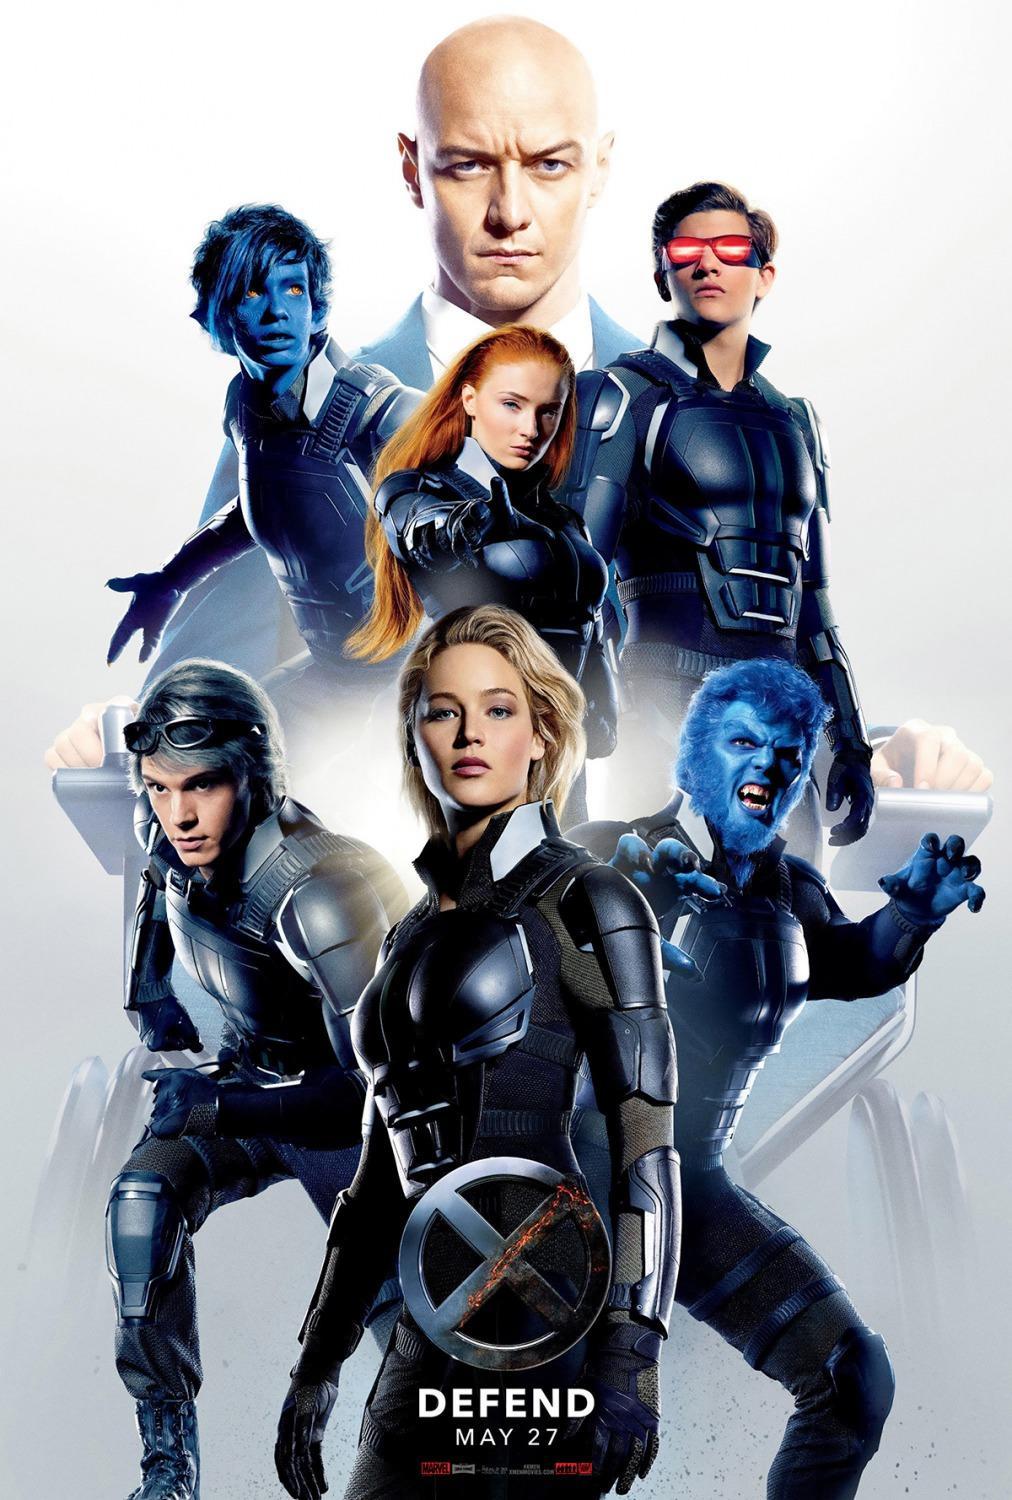 Постер фильма Люди Икс: Апокалипсис | X-Men: Apocalypse